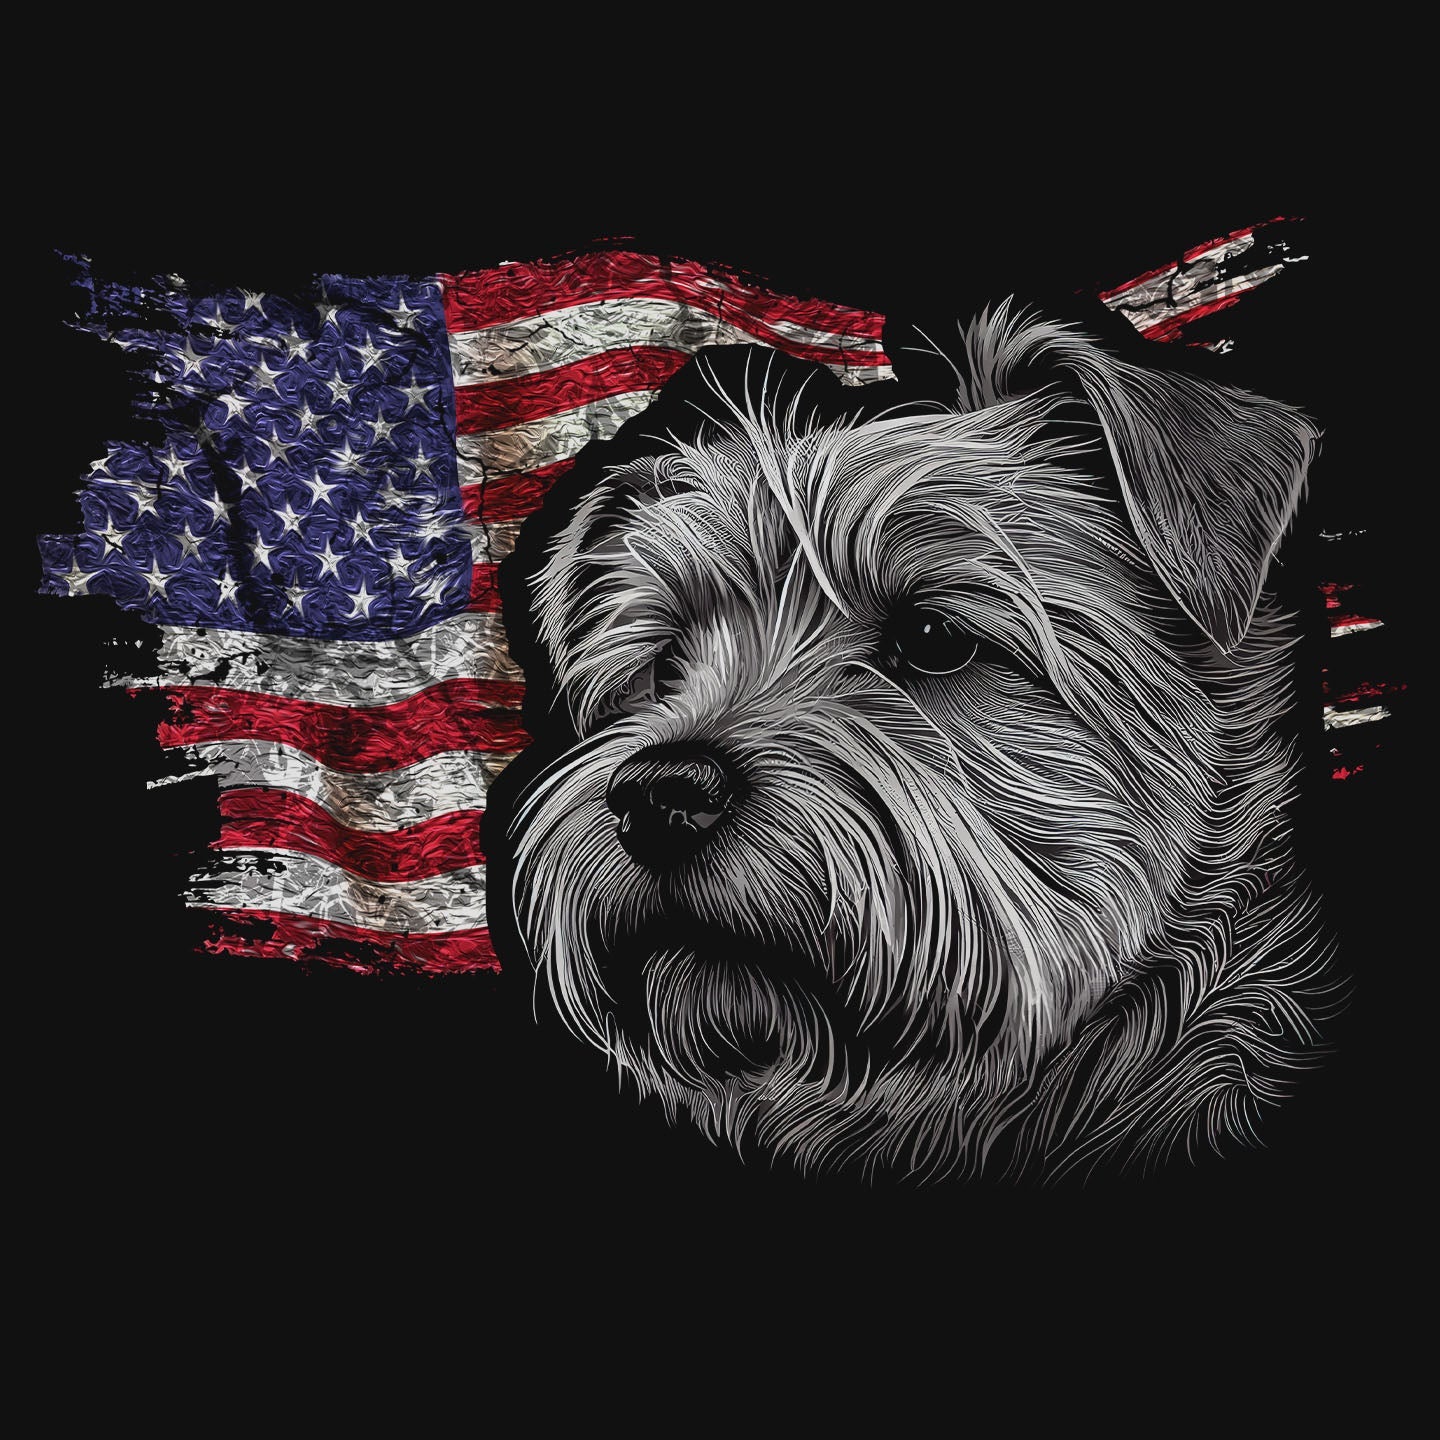 Patriotic Norfolk Terrier American Flag - Women's V-Neck T-Shirt